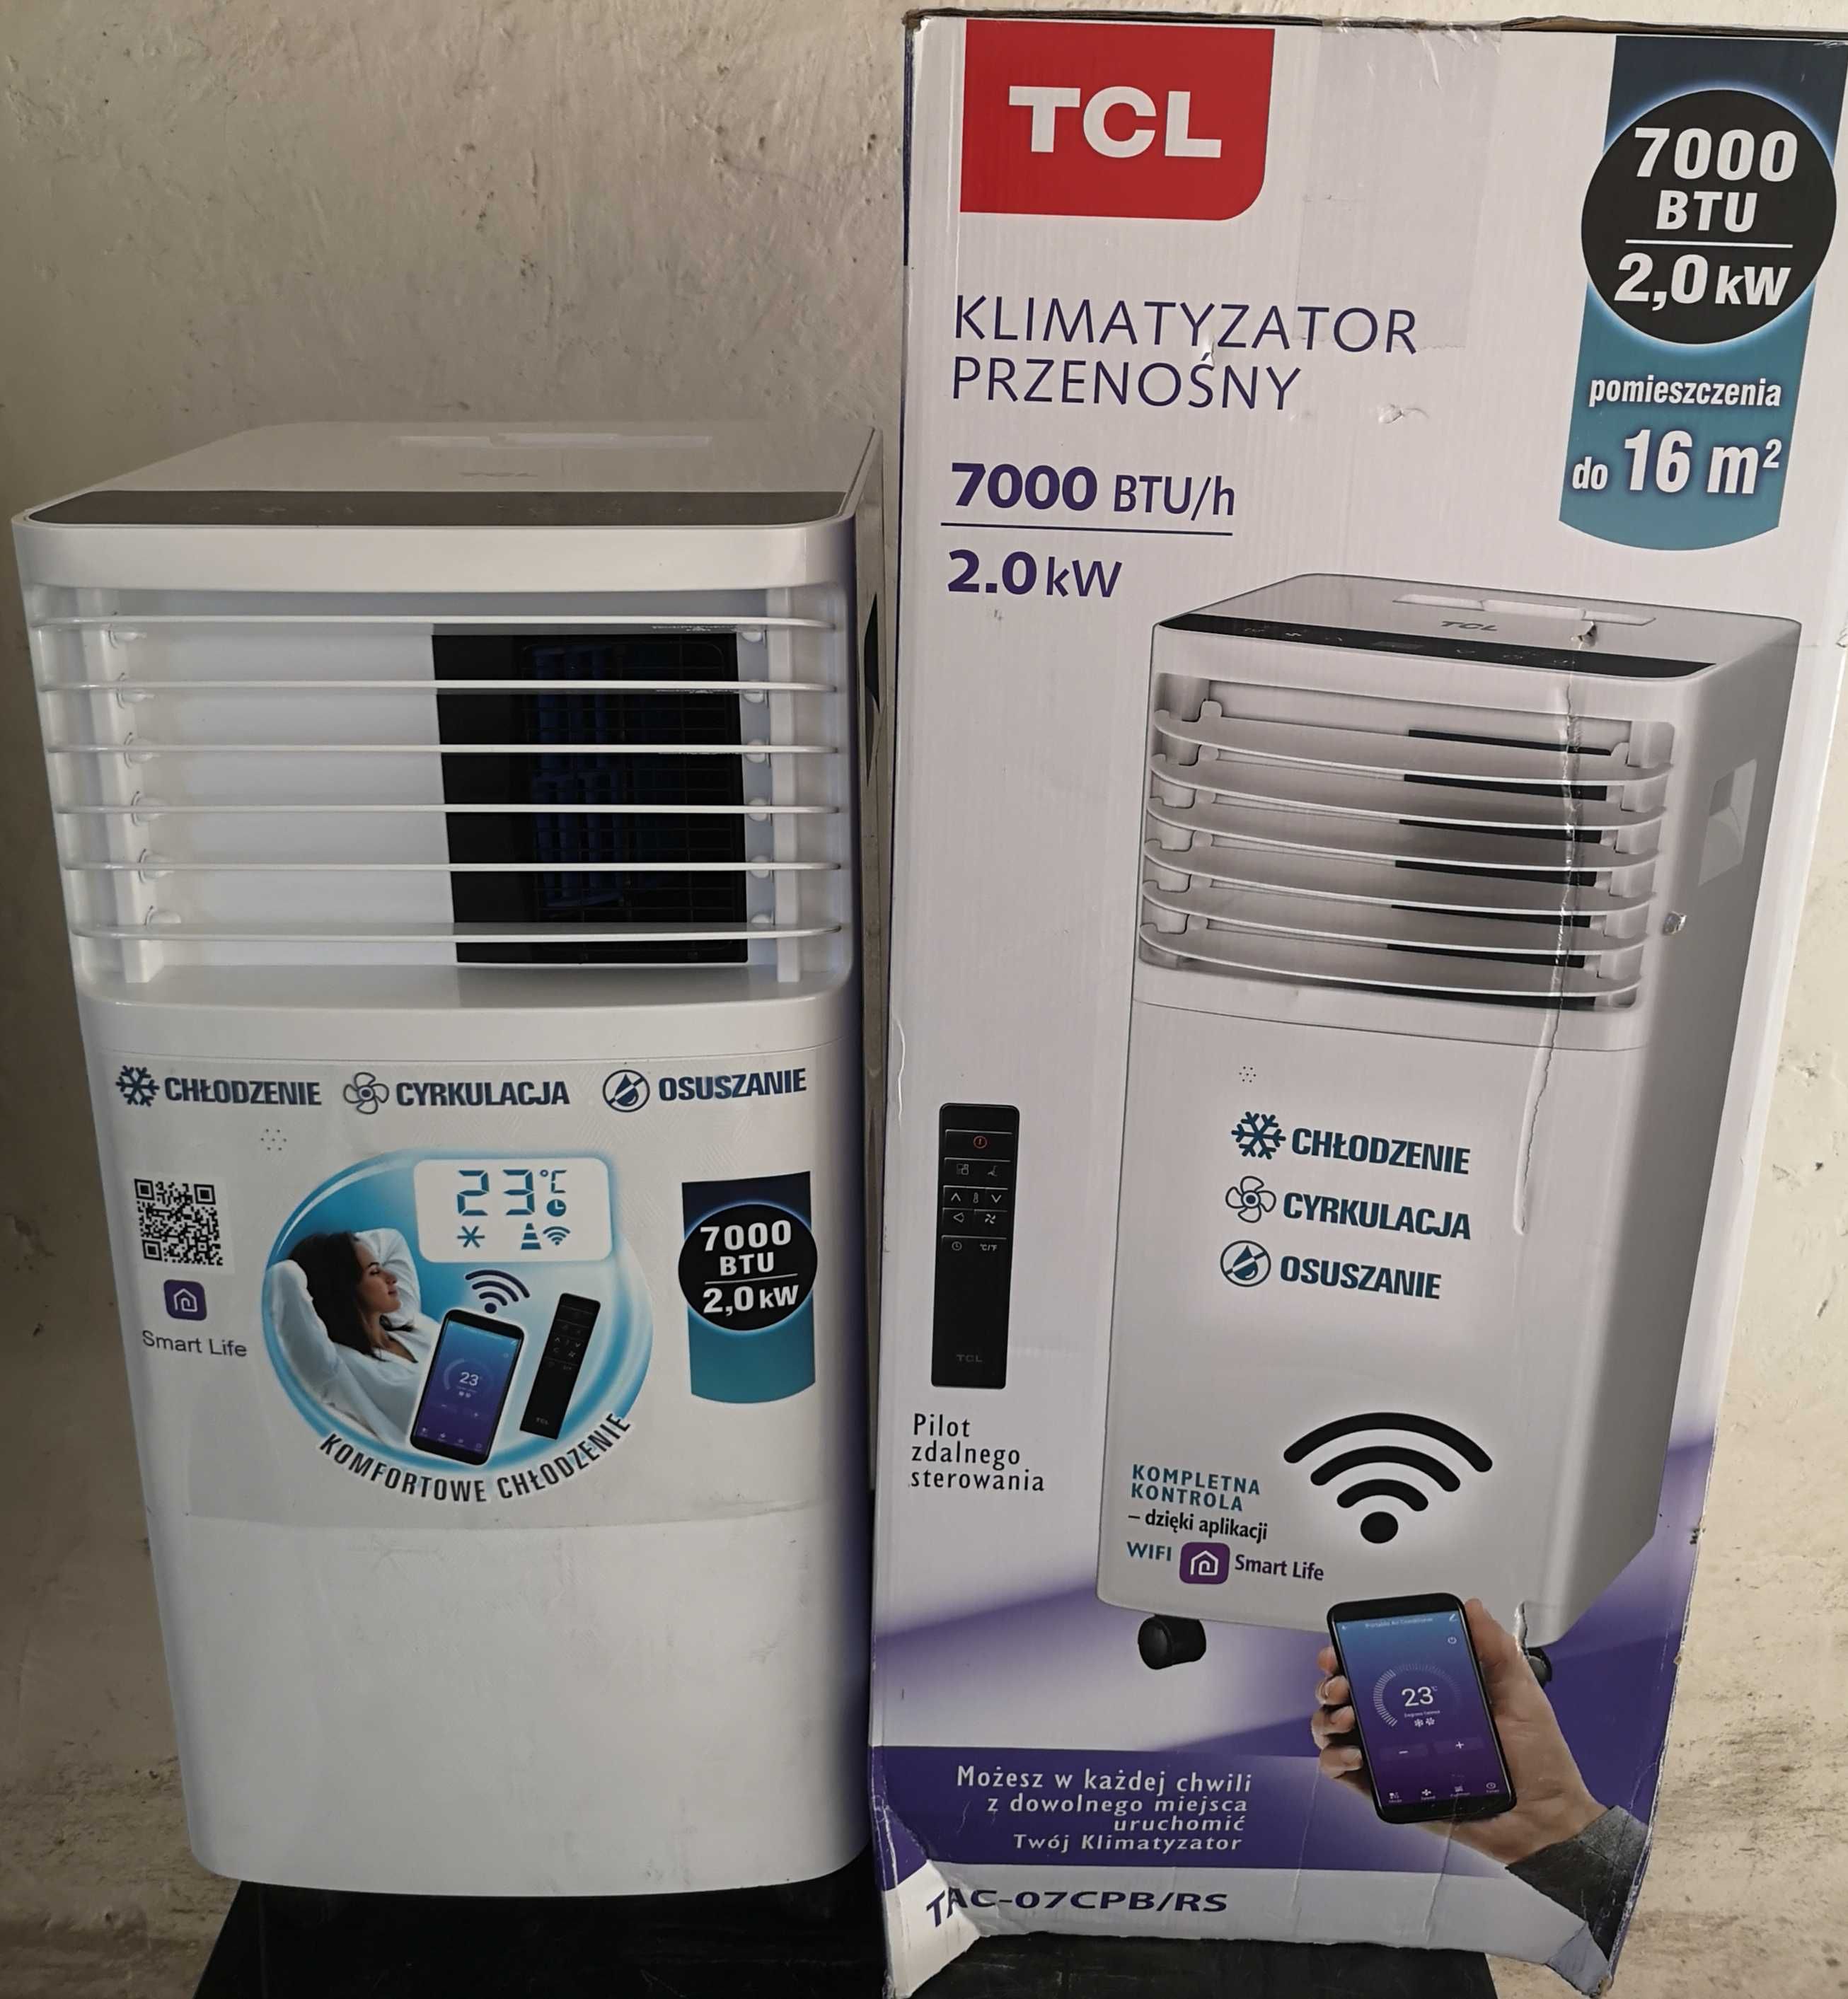 NOWY! Klimatyzator TCL TAC-07CPB/RS